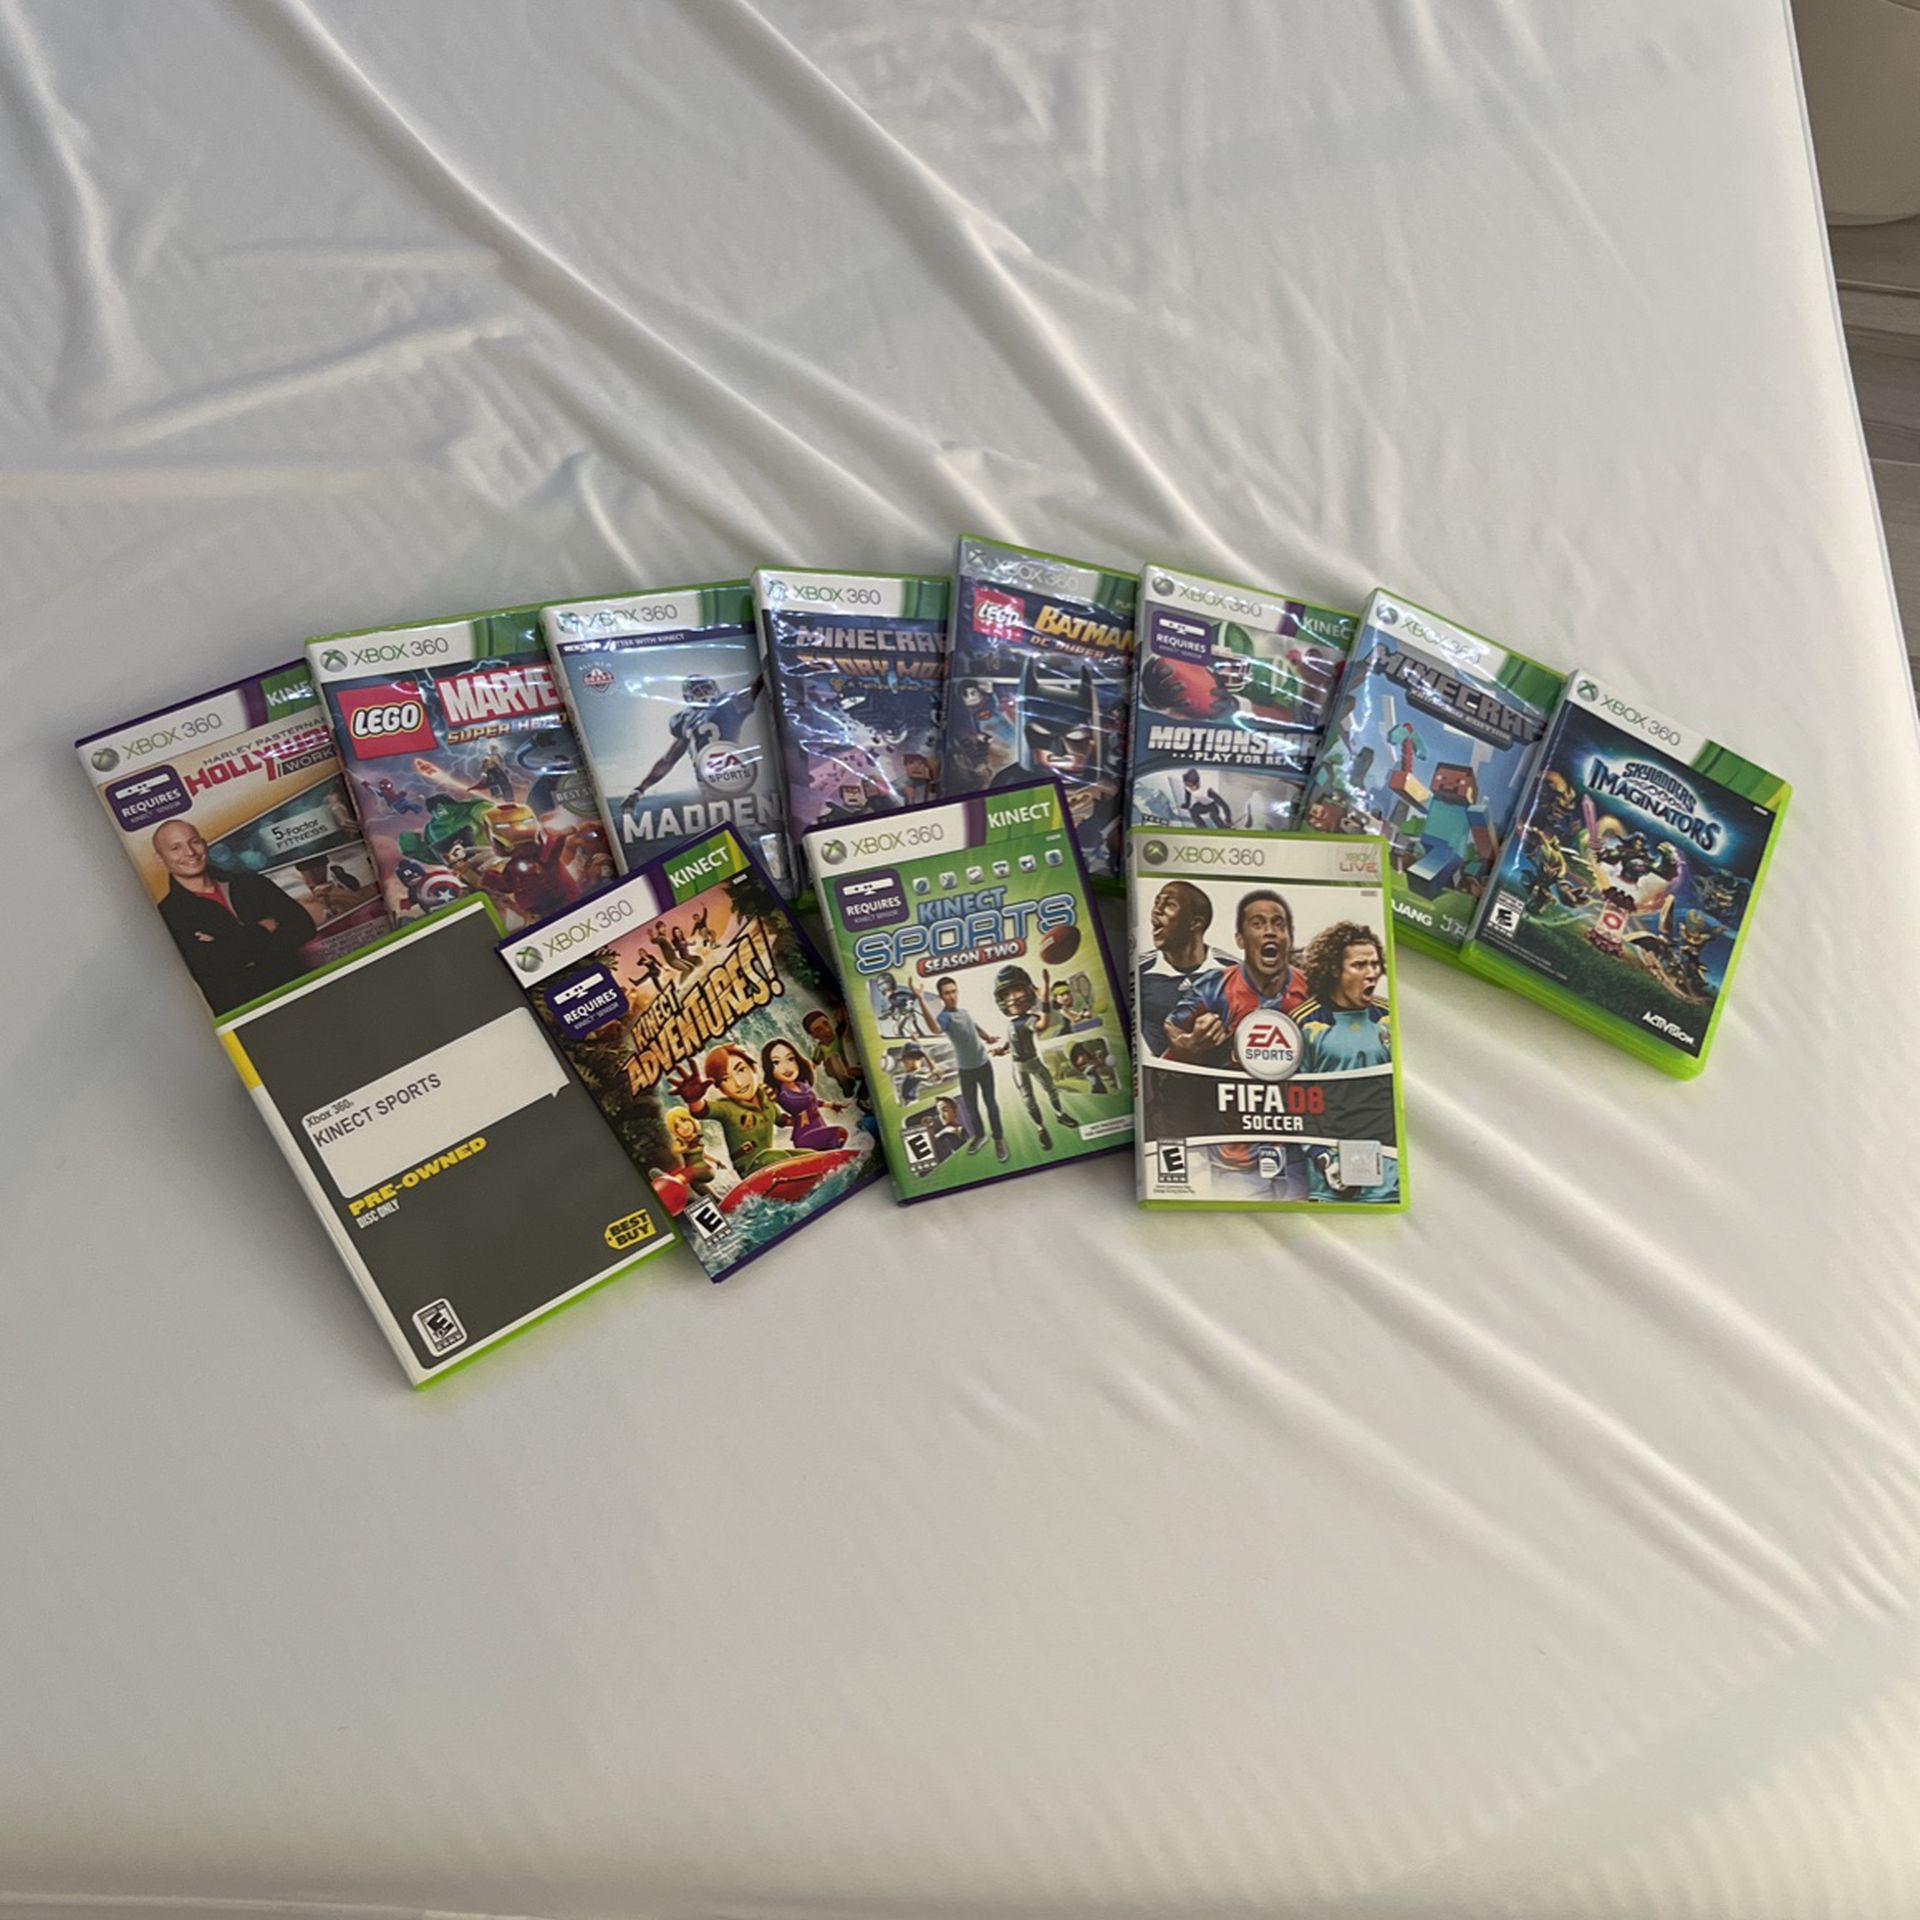 Xbox 360 disc games  $6 each